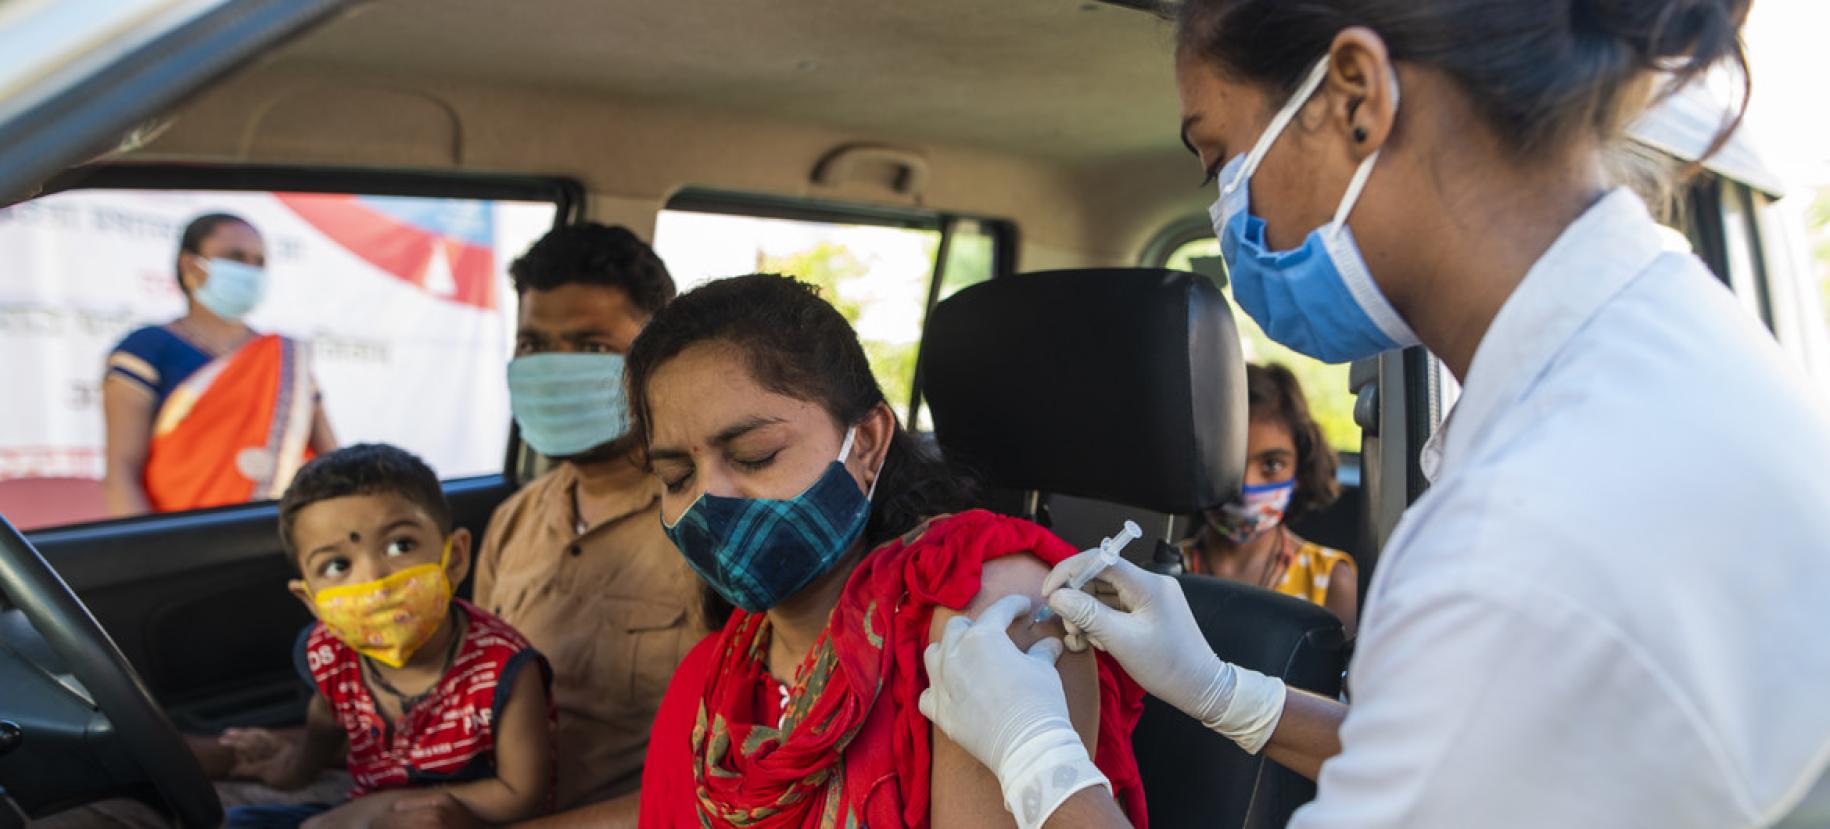 امرأة تتلقى اللقاح صد كوفيد-19 في السيارة وبجانبها رجل وطفل في حضنه.